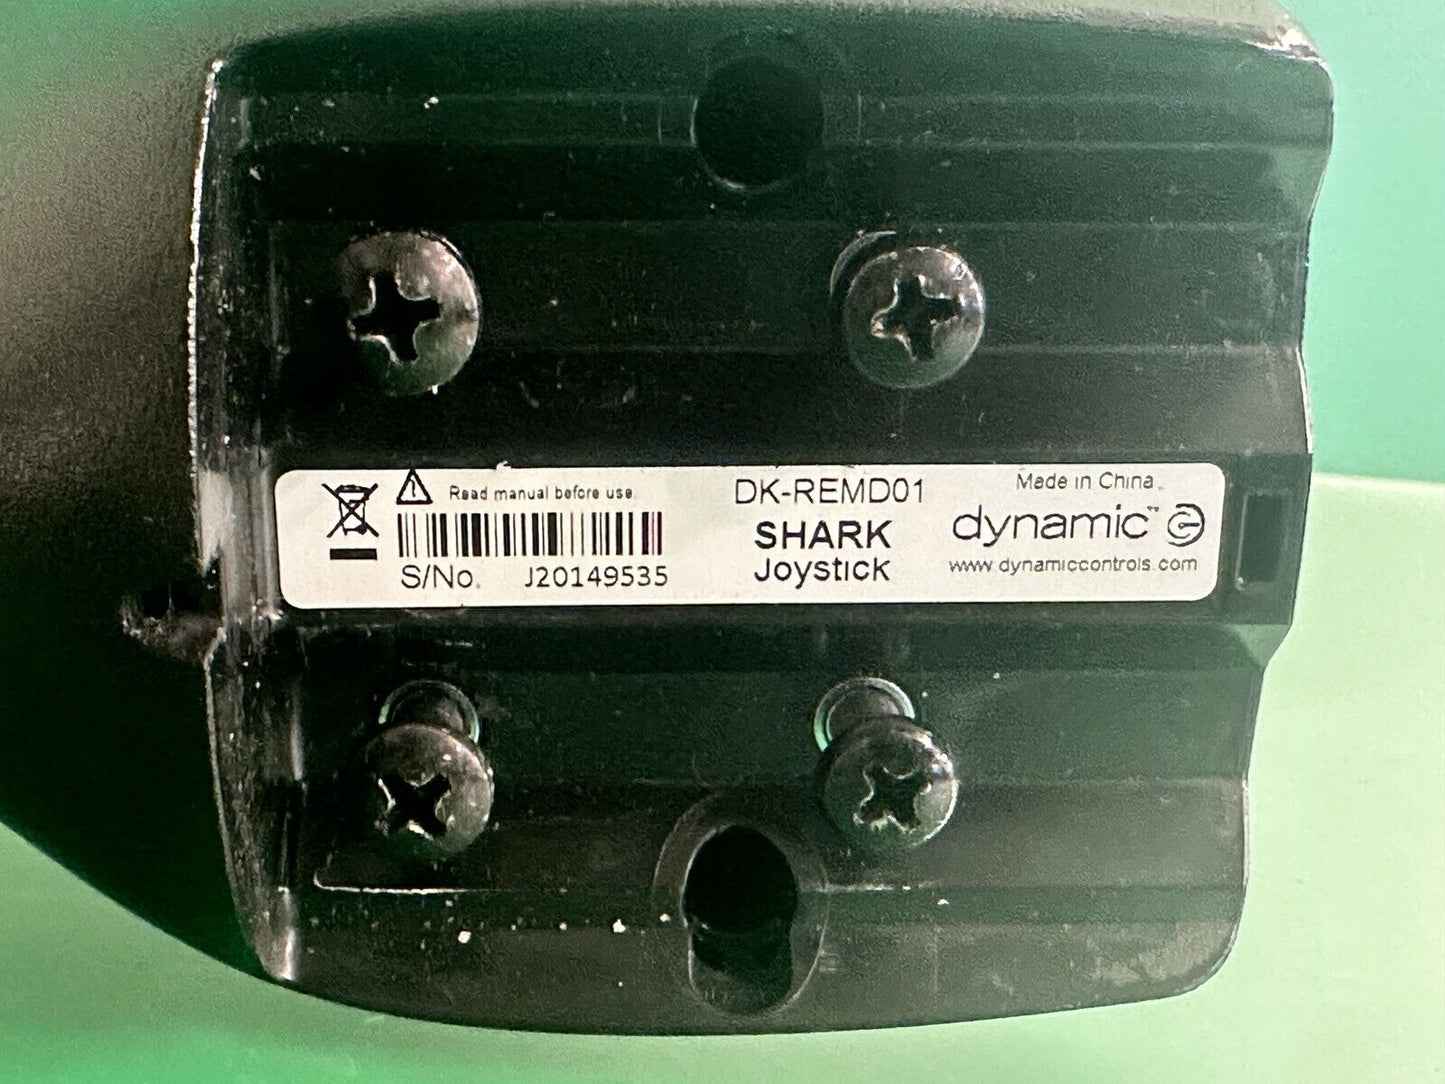 DYNAMIC Joystick for Power Wheelchair -  model #:DK-REMD01 - SHARK  #i705